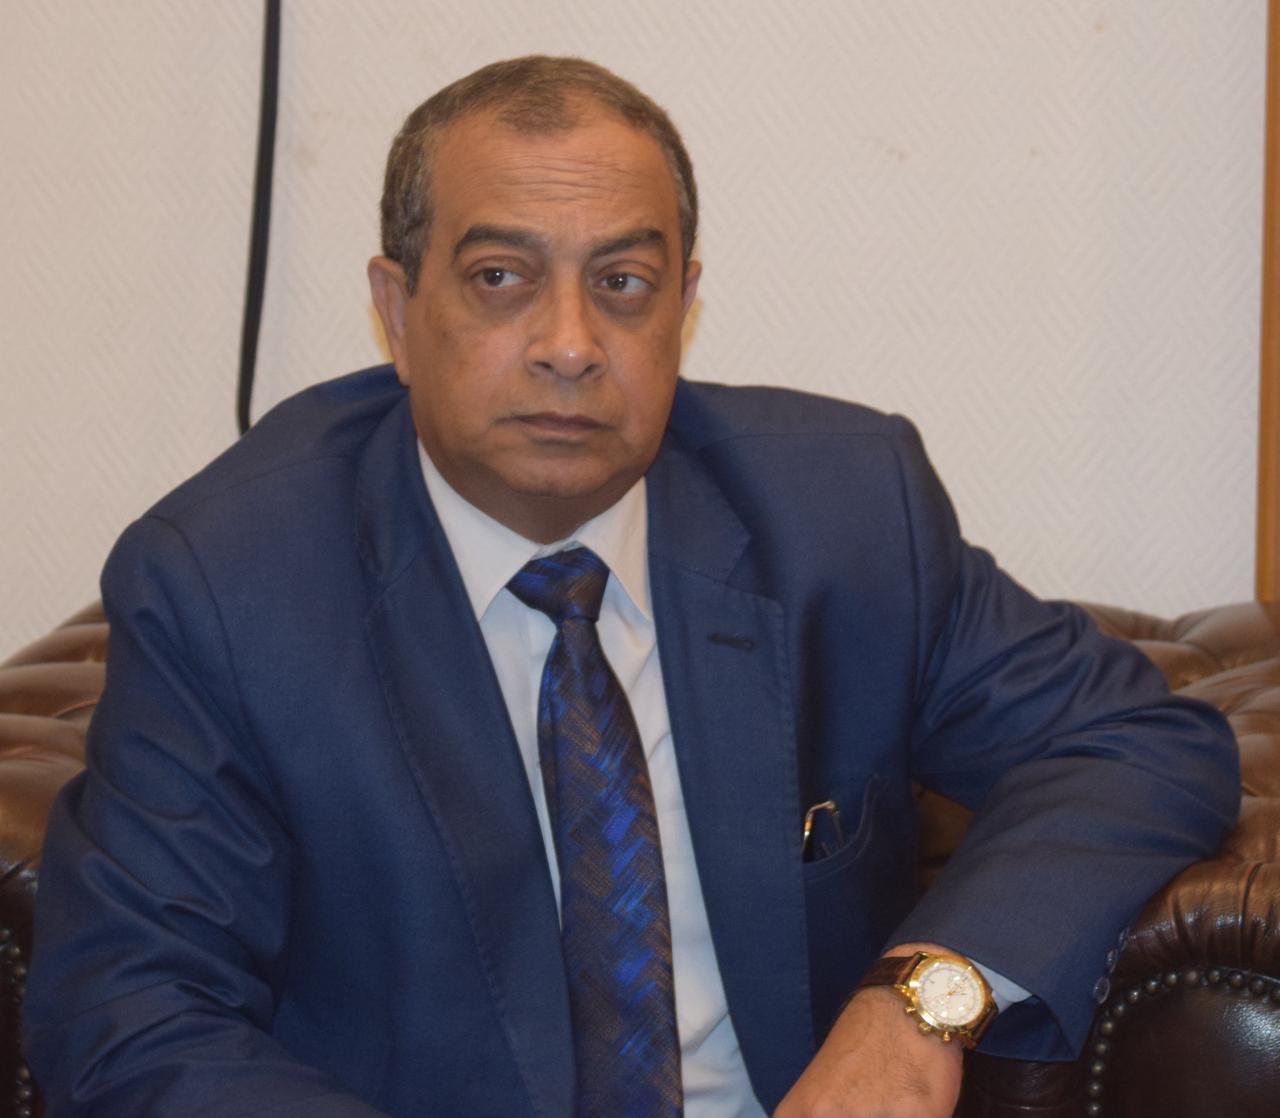 رئيس شعبة الجمارك: التوجيهات الرئاسية بالإعفاءات الضريبية جرعة منشطة للاقتصاد المصري